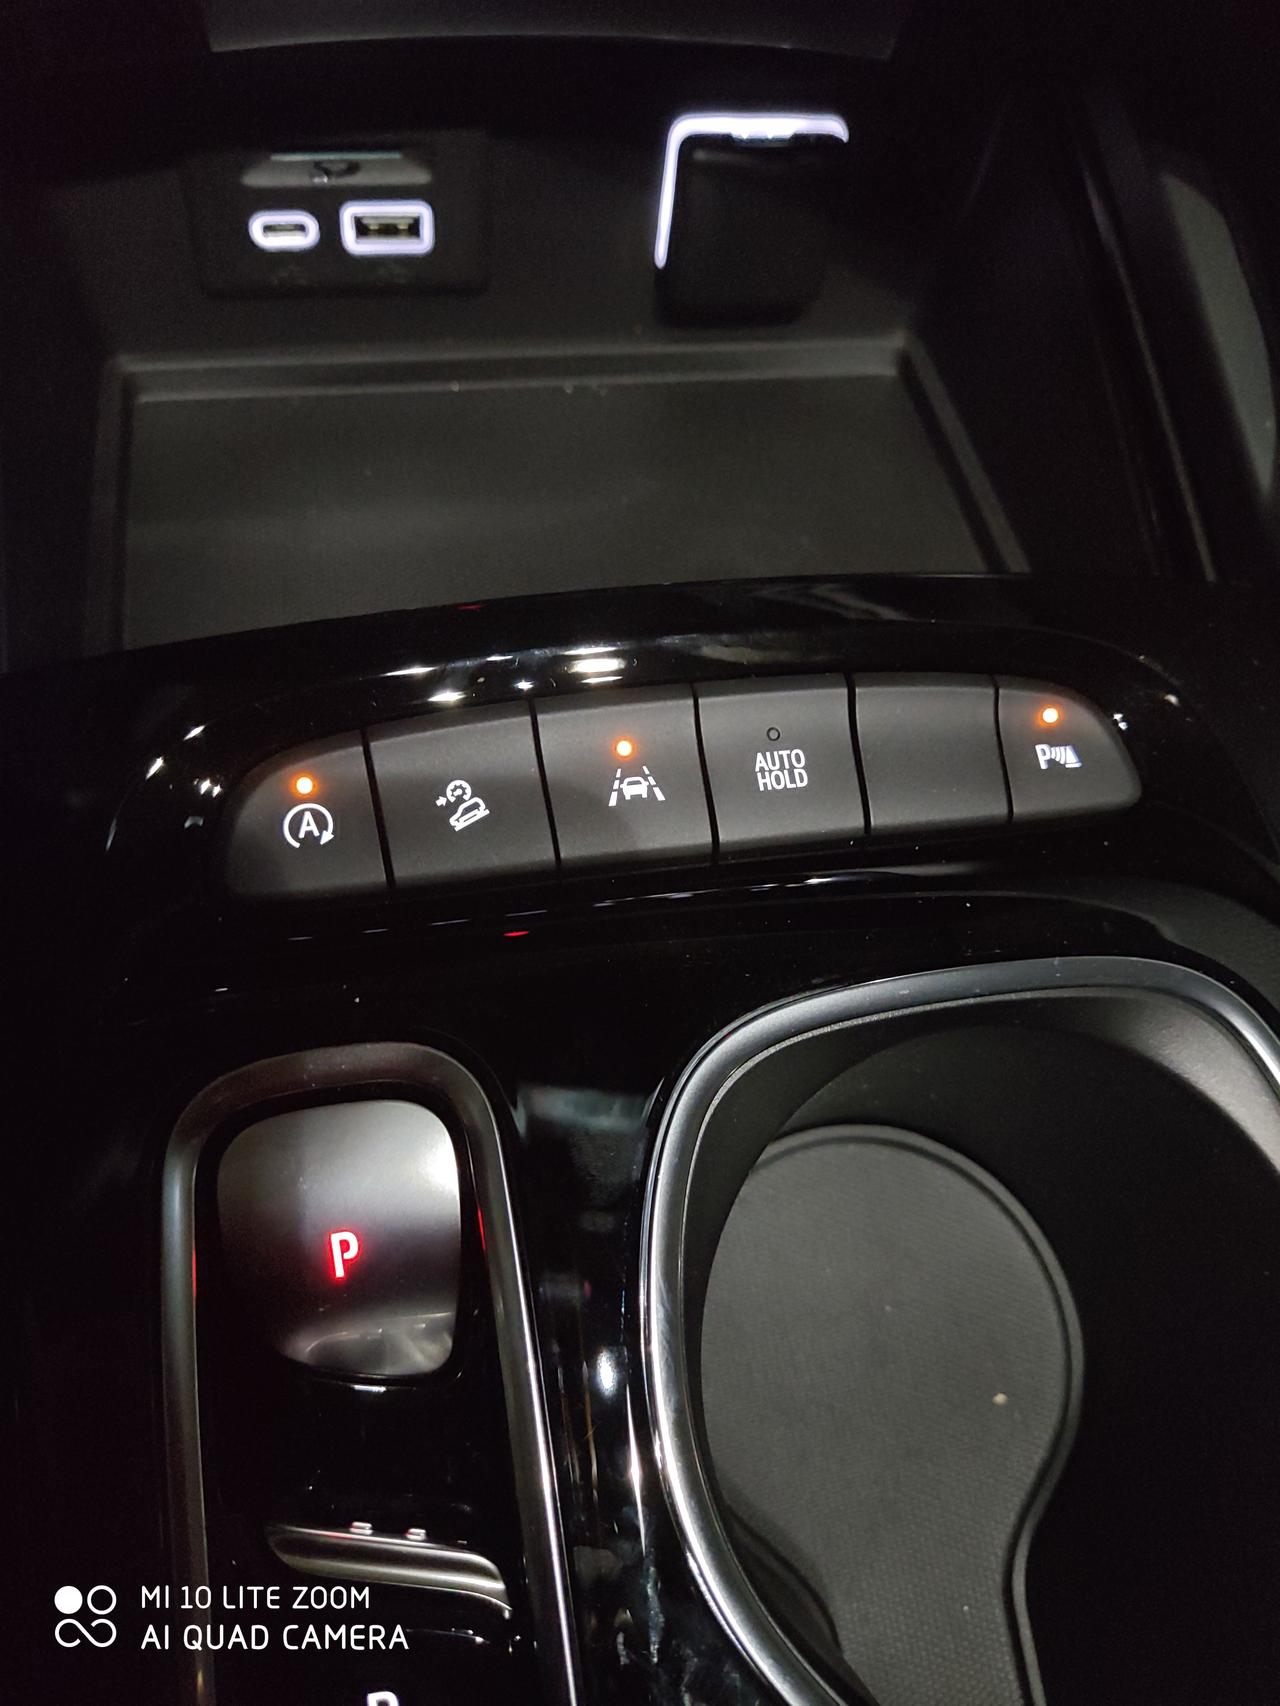 别克昂科威 车子启动后收音机自动开启，杂音一直响，能否默认关闭？另外图片中最左边那个A按钮是啥意思？